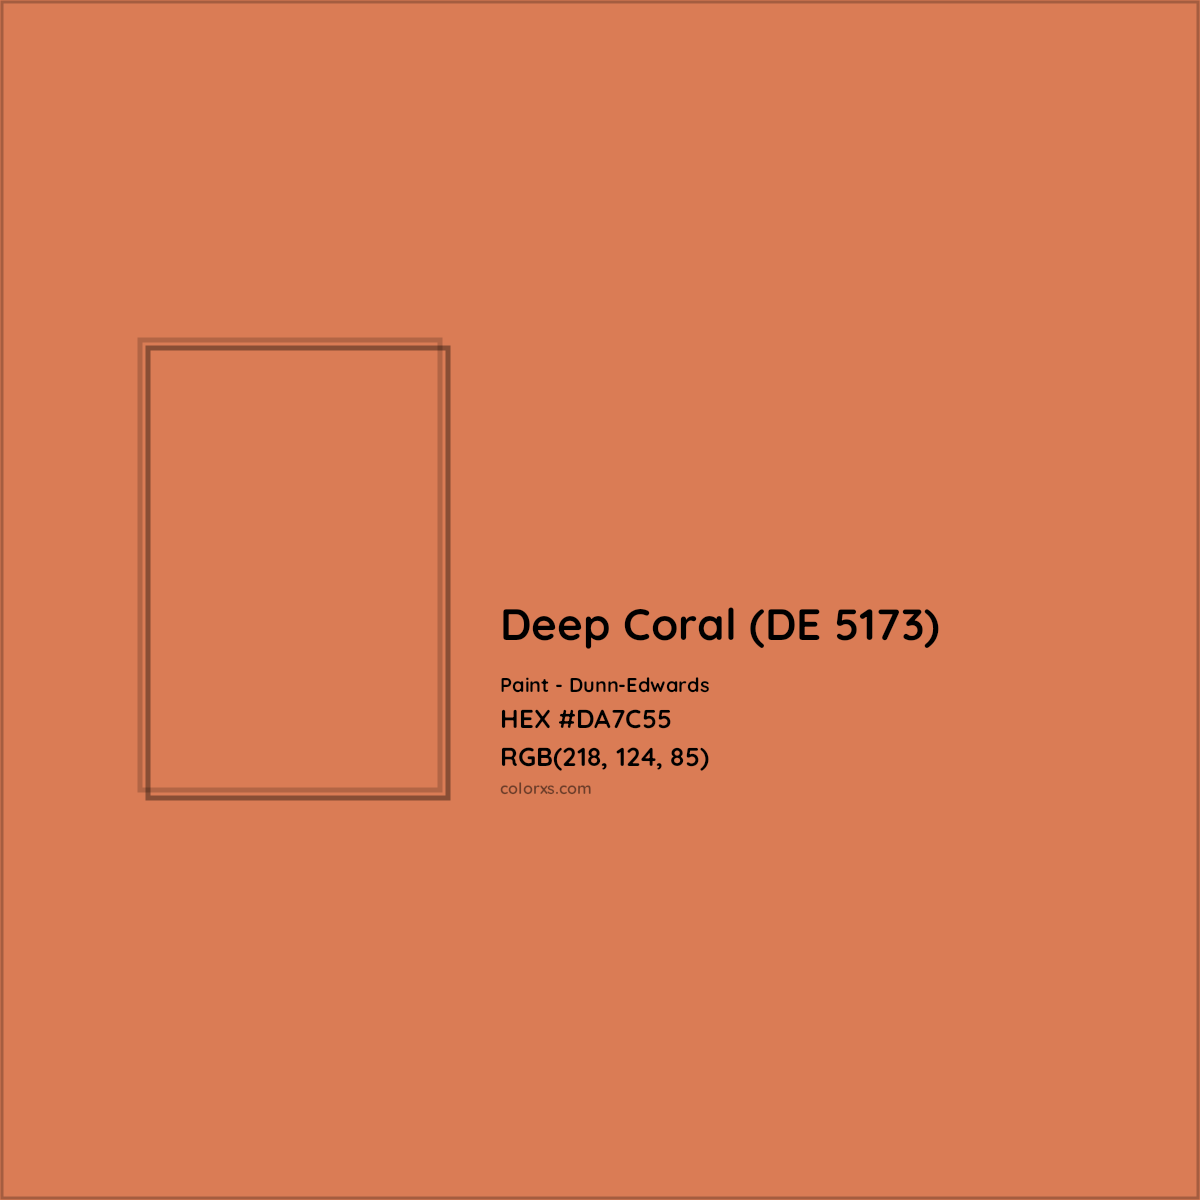 HEX #DA7C55 Deep Coral (DE 5173) Paint Dunn-Edwards - Color Code